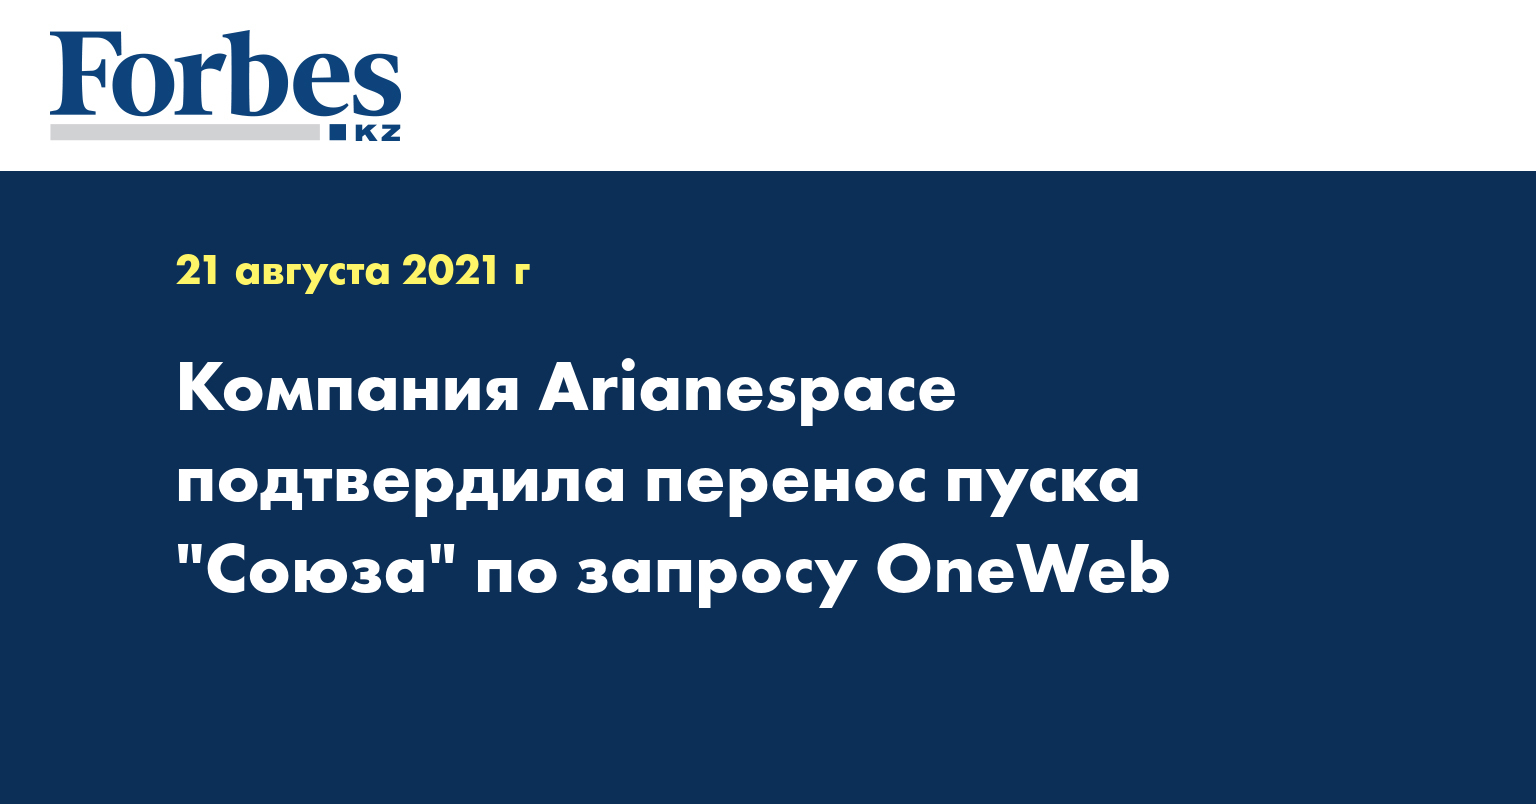 Компания Arianespace подтвердила перенос пуска 